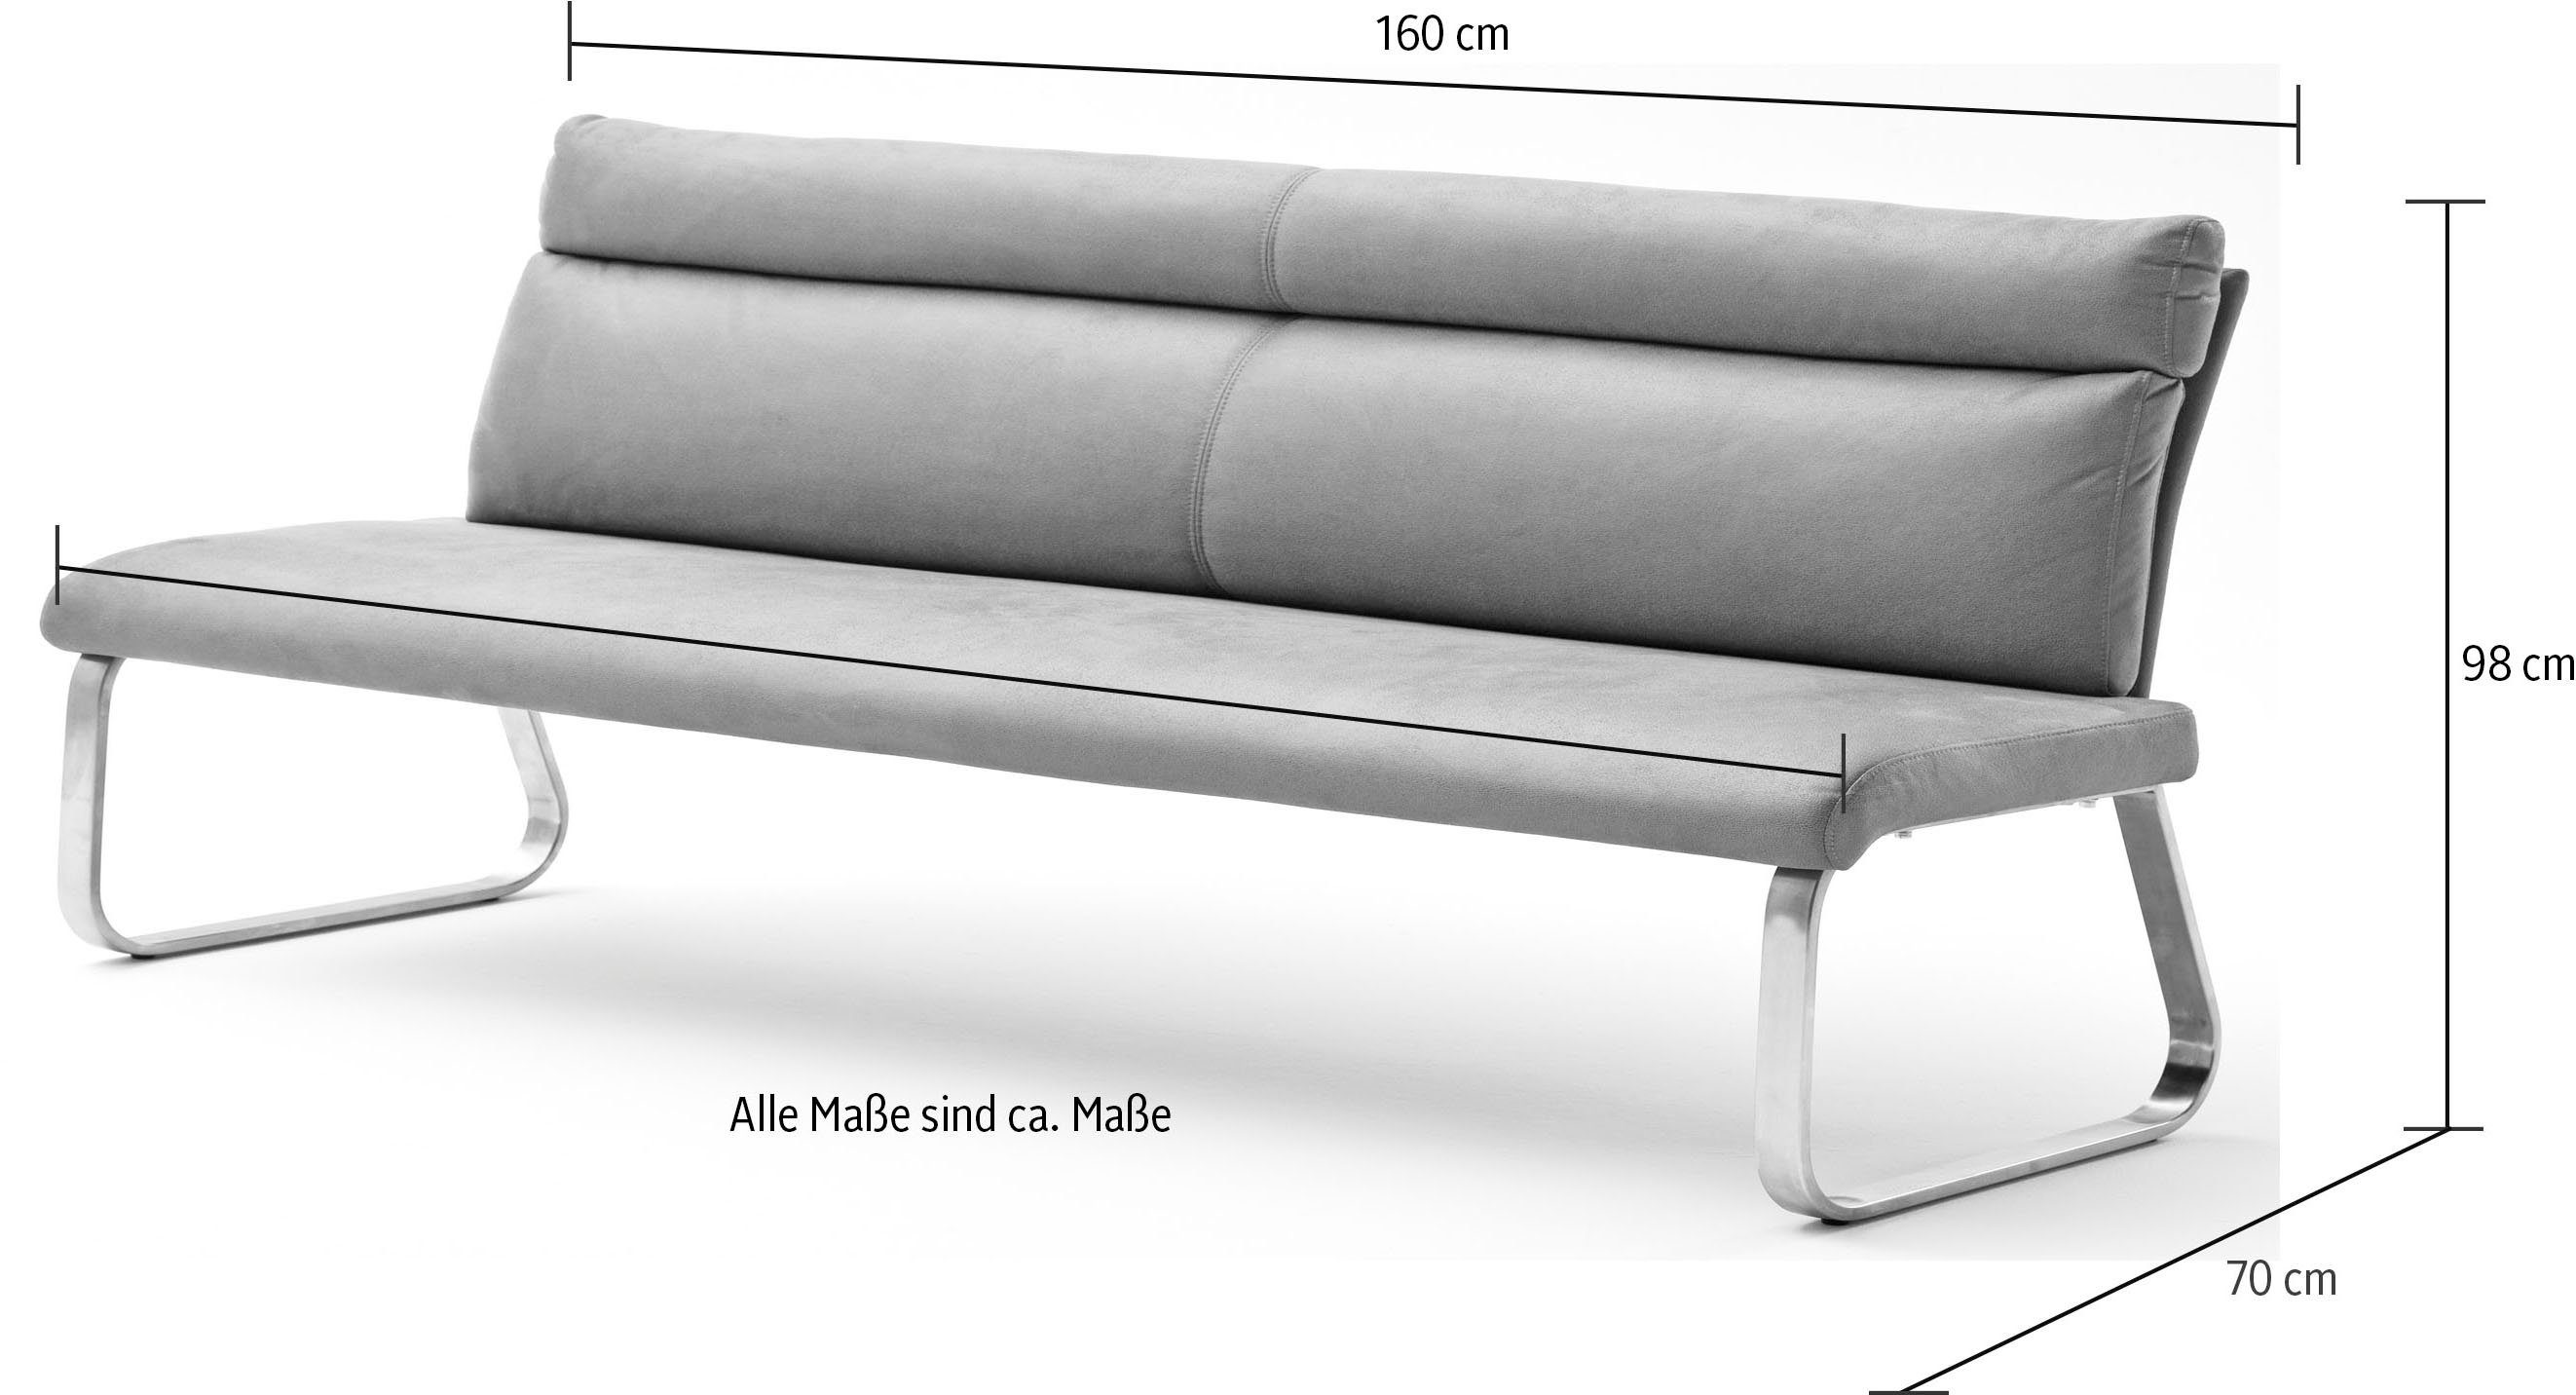 RABEA-PBANK furniture | braun Polsterbank MCA braun